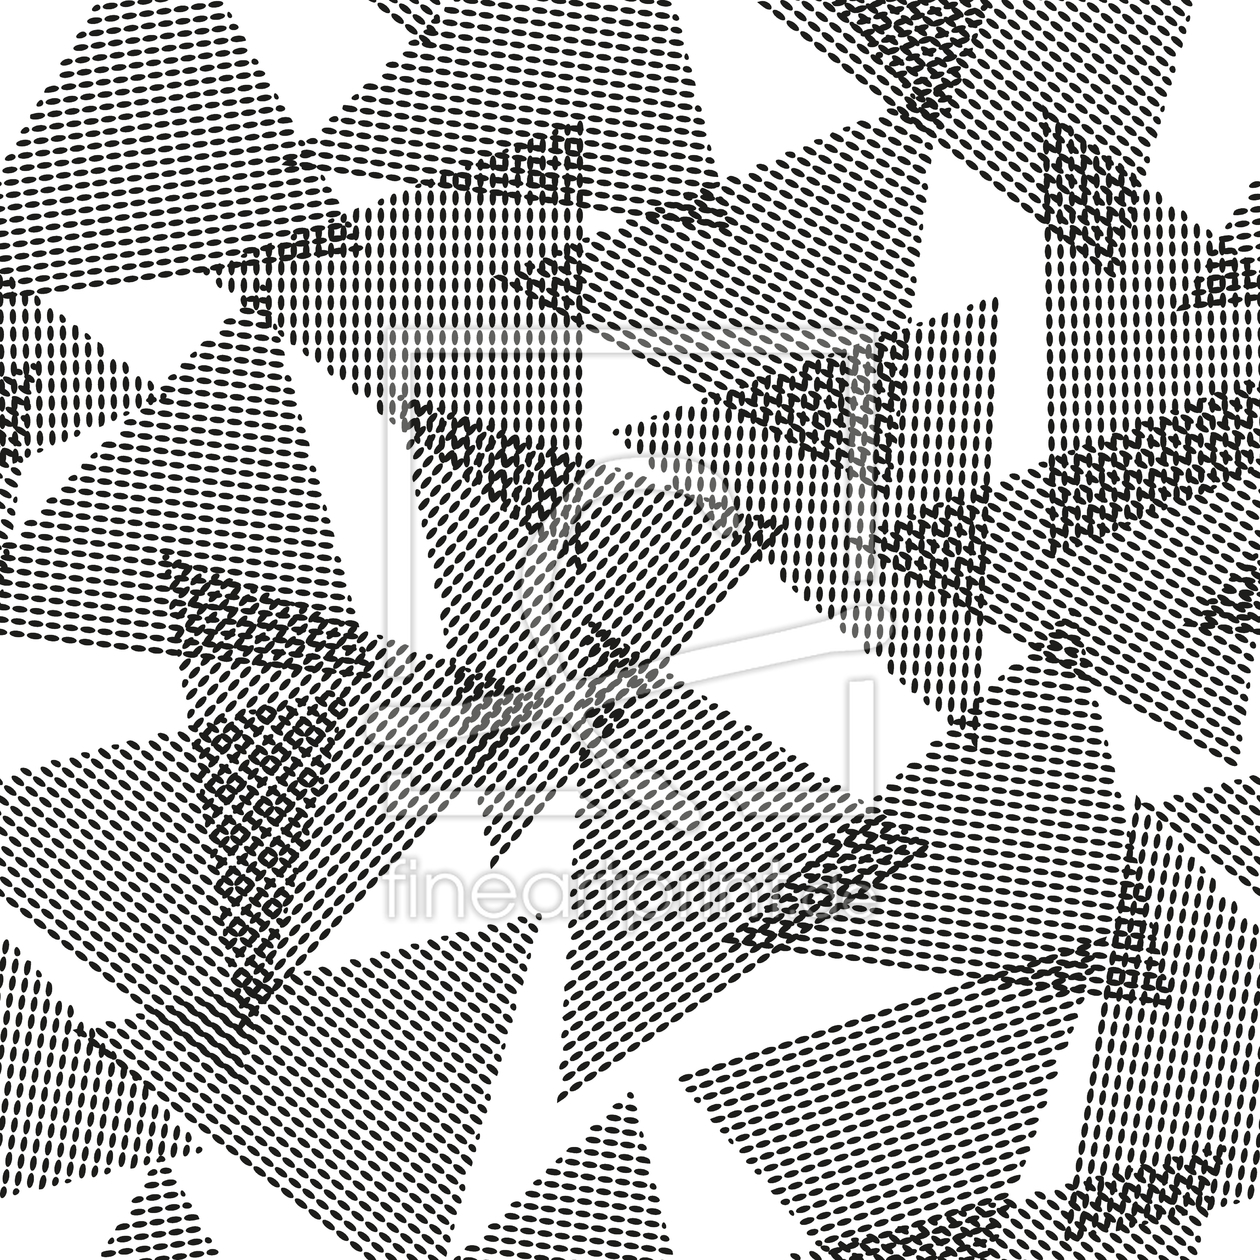 Bild-Nr.: 9010030 Dreiecke Berühren Sich erstellt von patterndesigns-com